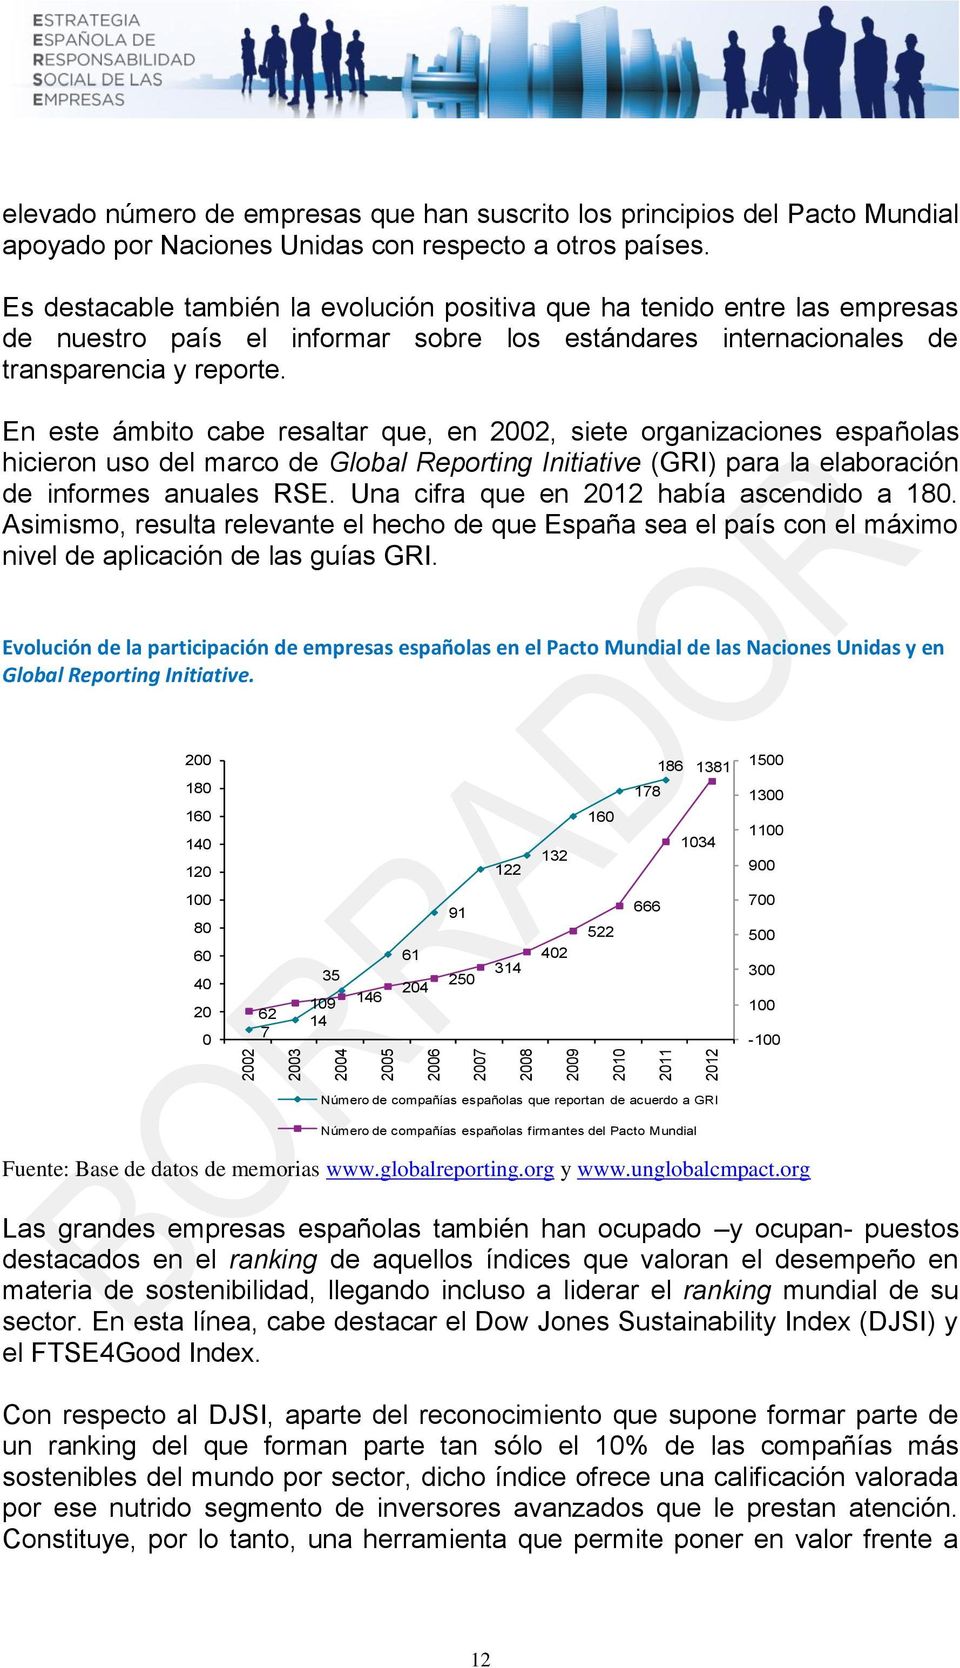 En este ámbito cabe resaltar que, en 2002, siete organizaciones españolas hicieron uso del marco de Global Reporting Initiative (GRI) para la elaboración de informes anuales RSE.